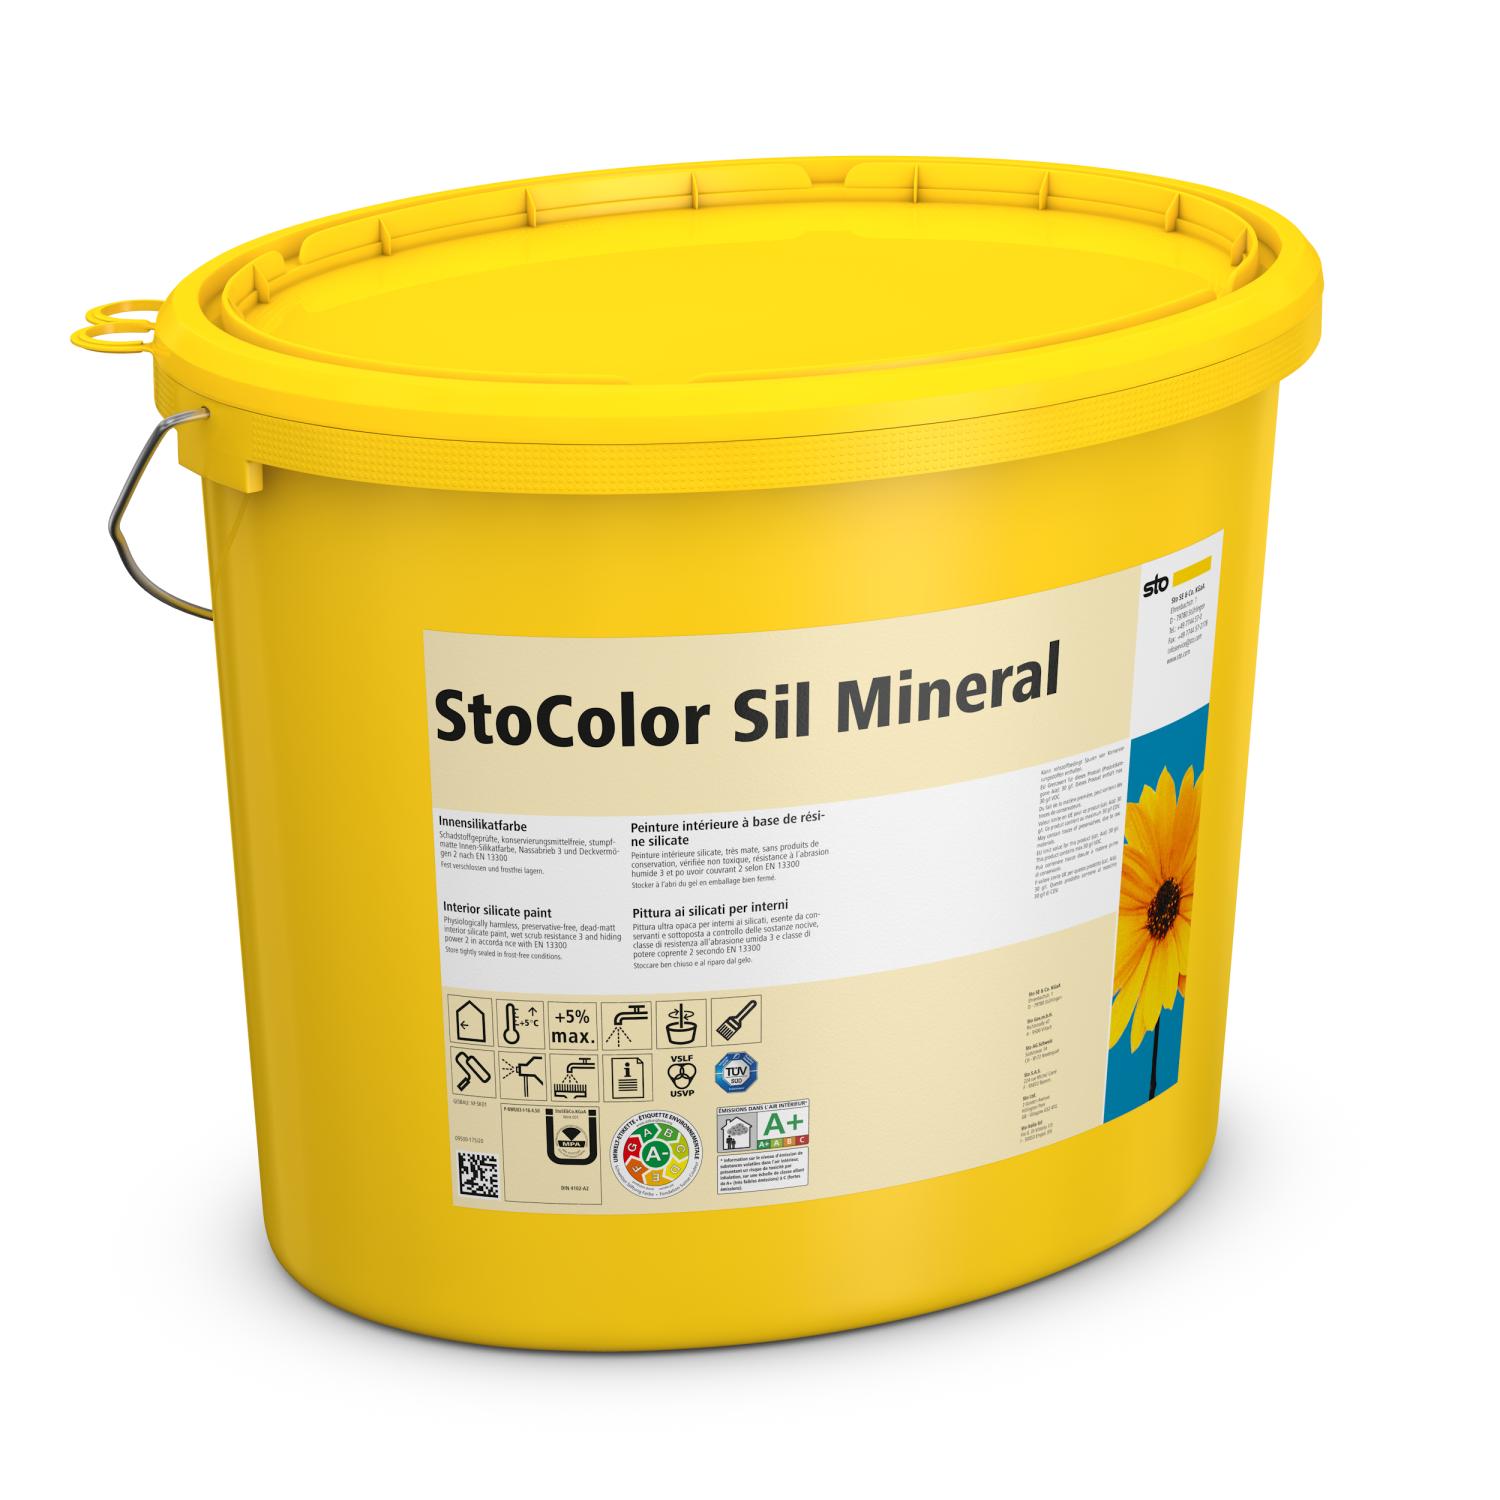 StoColor Sil Mineral - getönt, 15 l Eimer